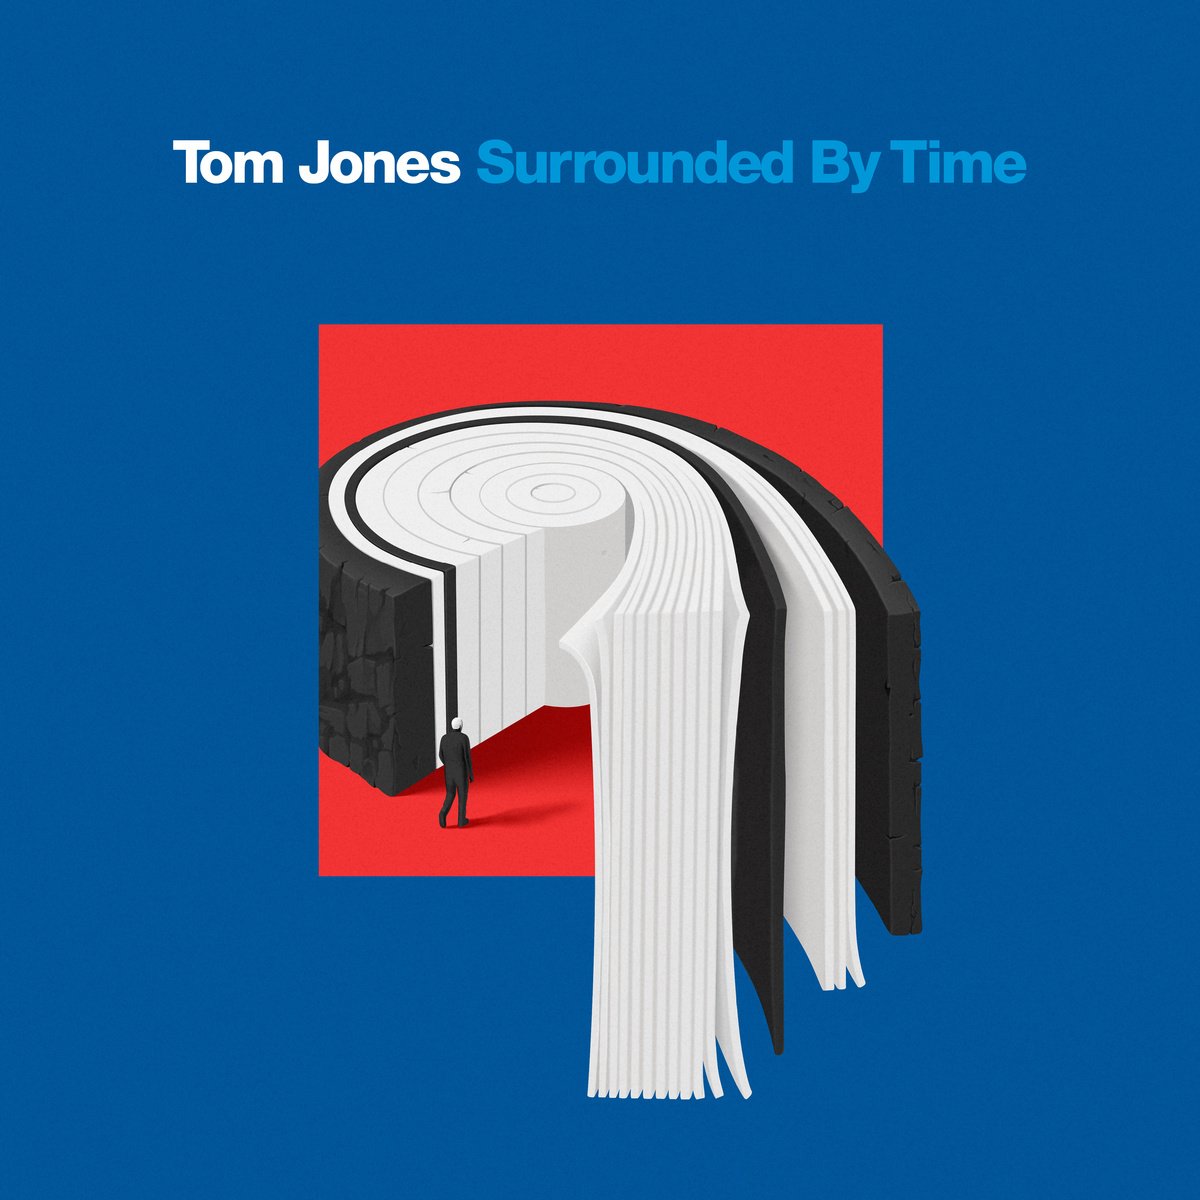 Tom Jones pubblica il nuovo disco “Surrounded By Time” il 23 aprile